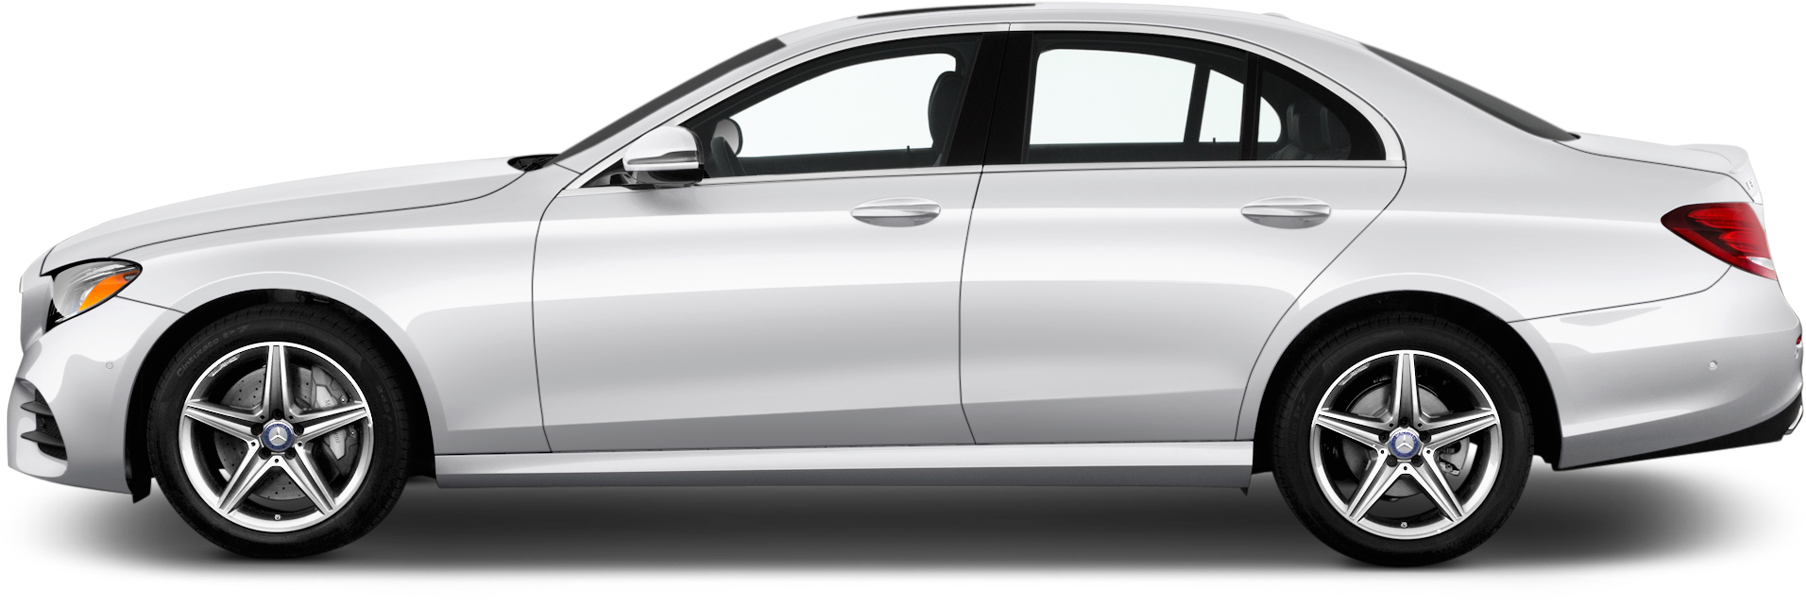 61 - - Bentley 2 Door Coupe 2018 Clipart (2048x1360), Png Download